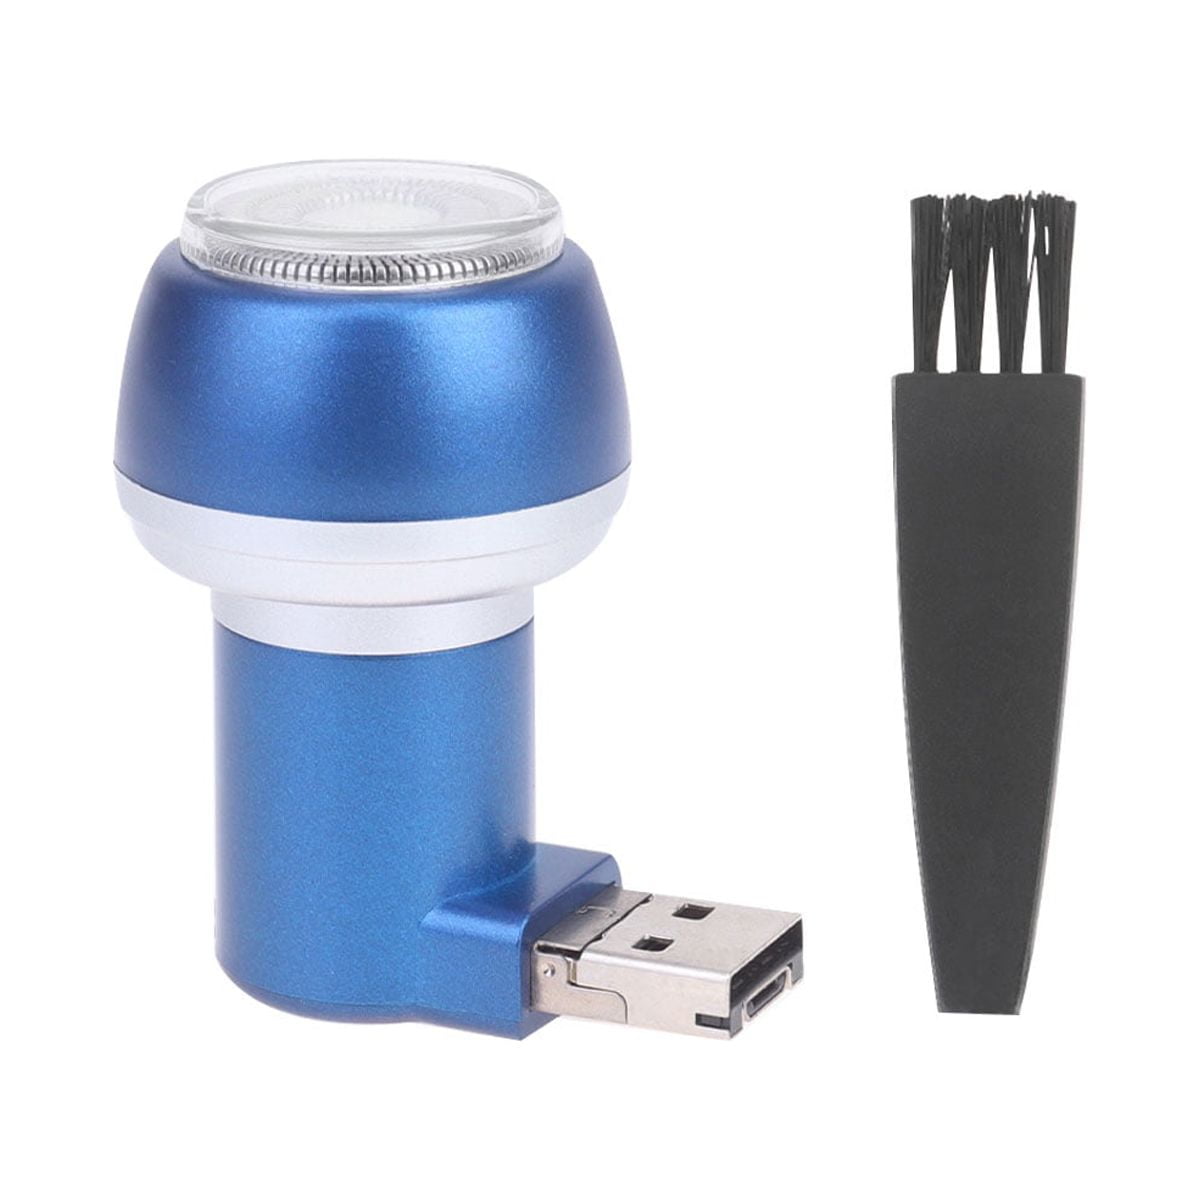 Mini afeitadora USB. – Latin Commerce